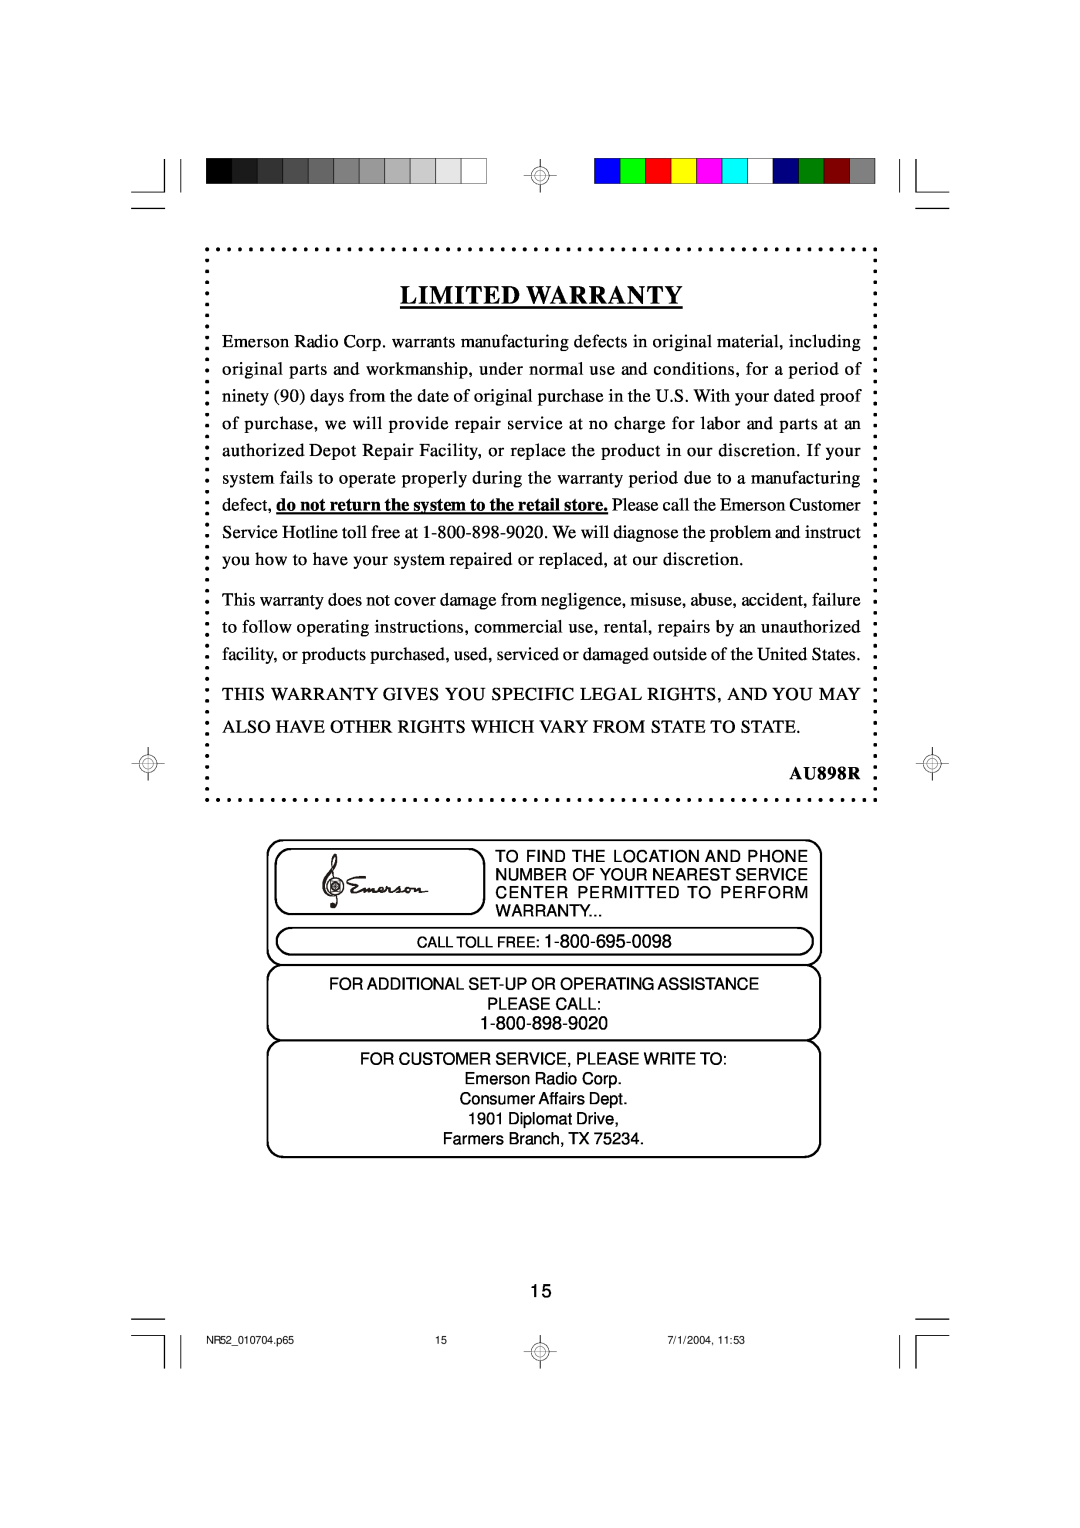 Emerson NR52 owner manual Limited Warranty, AU898R 